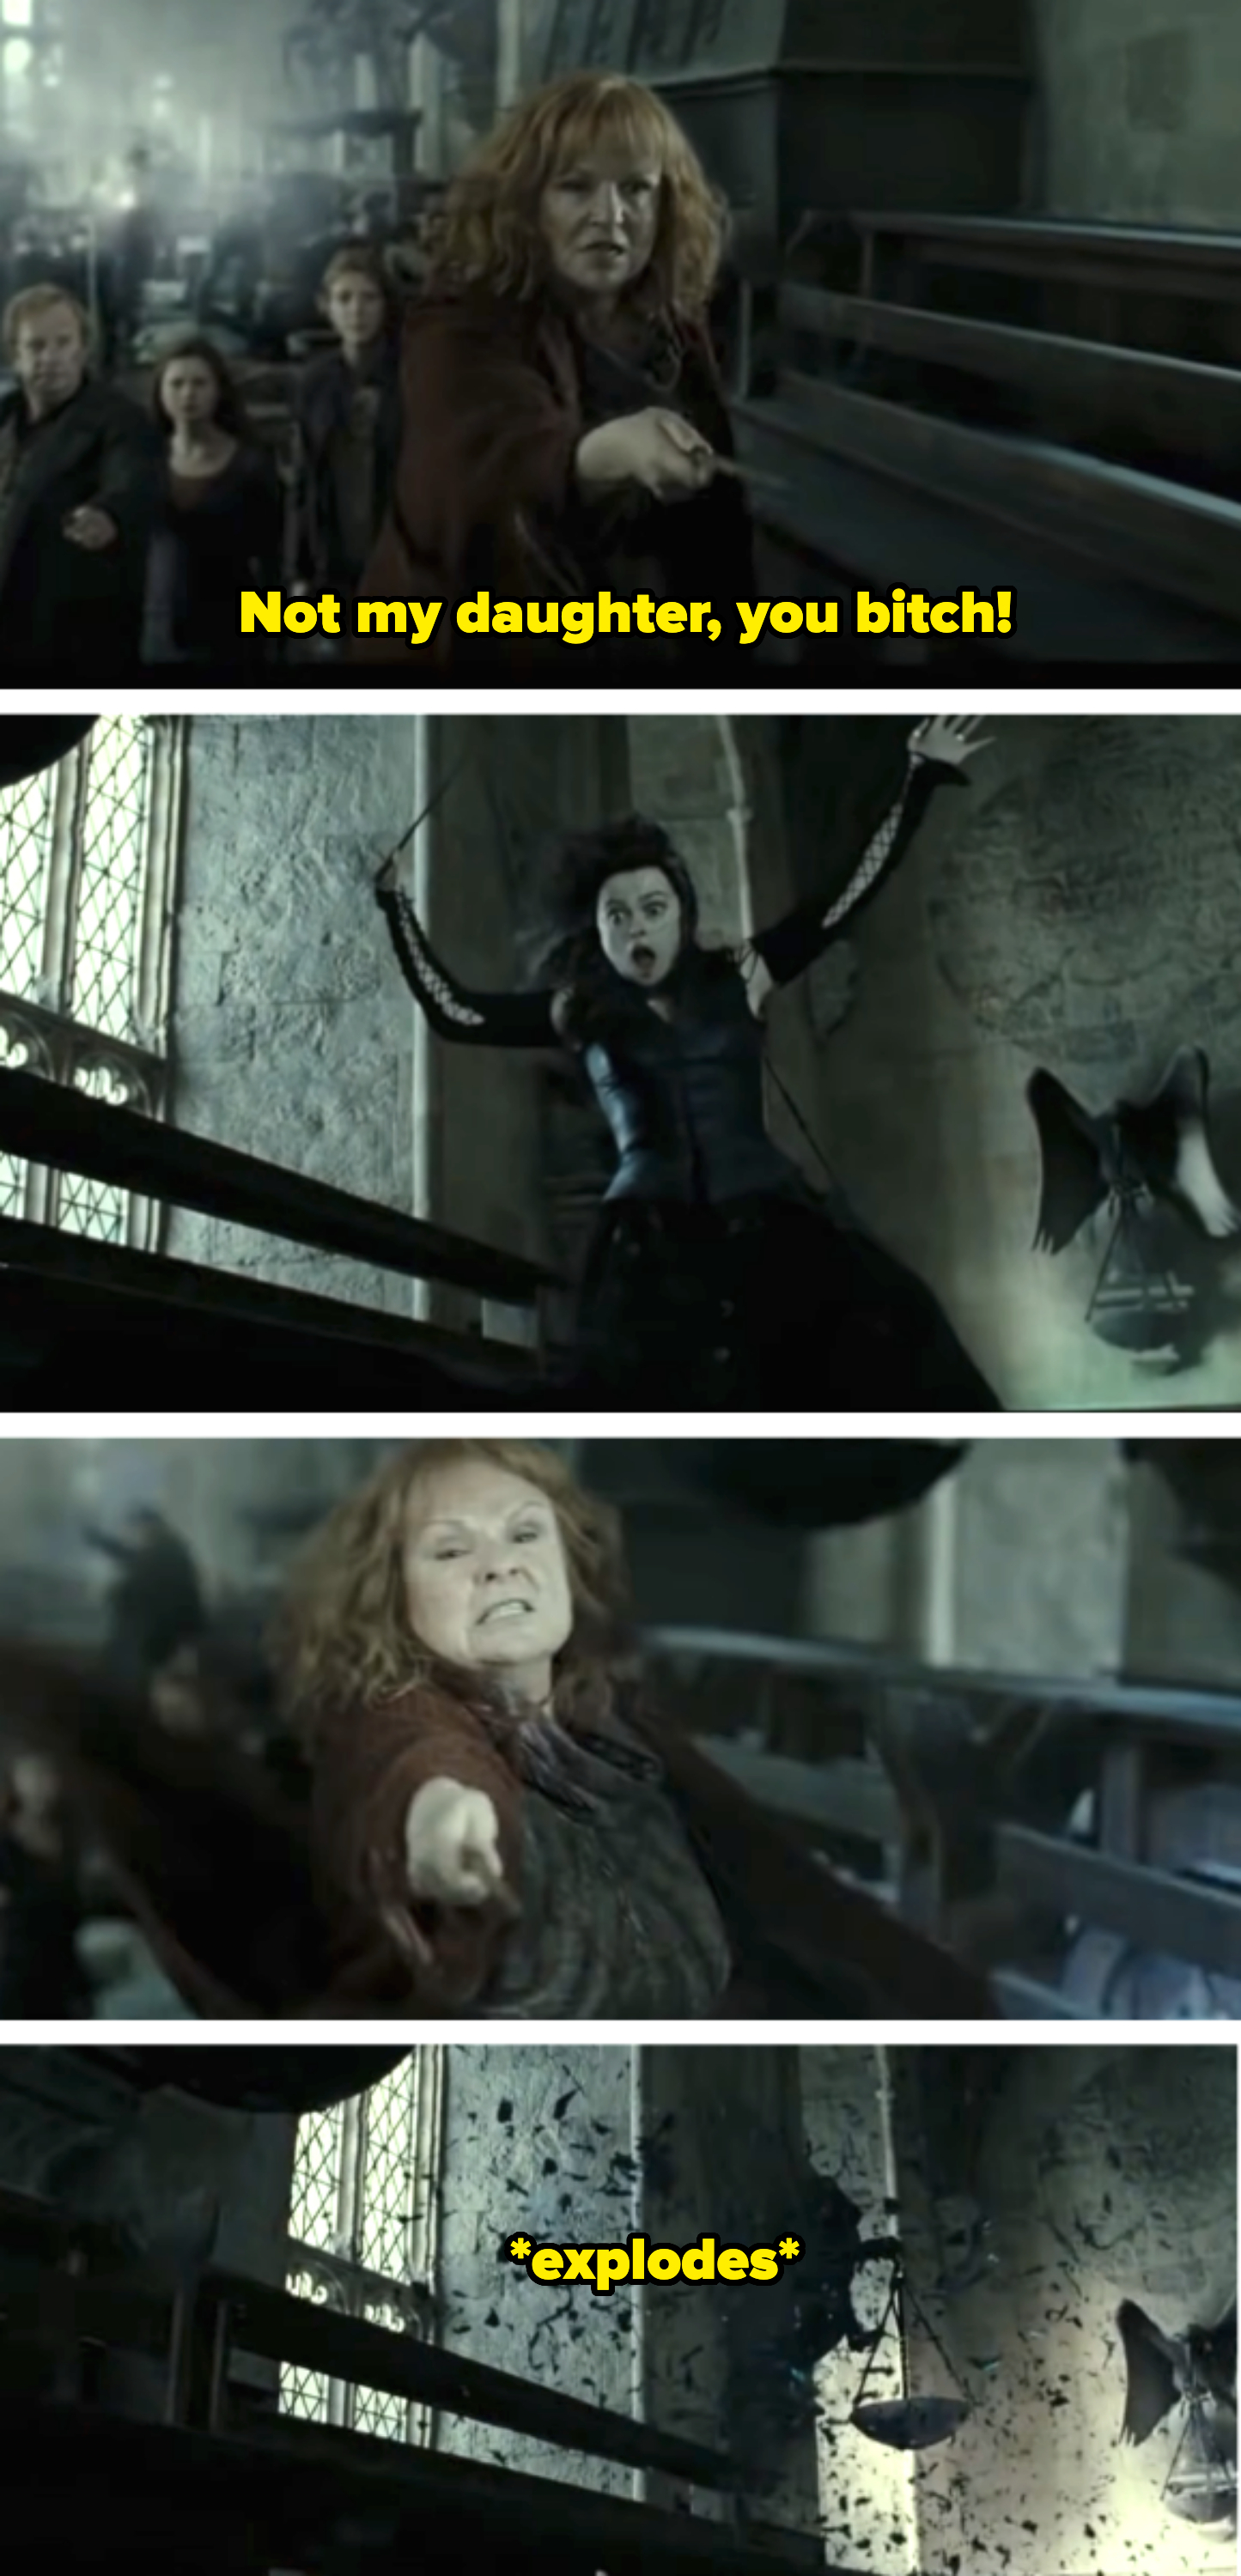 Molly Weasley battles Bellatrix Lestrange in a scene from a Harry Potter film